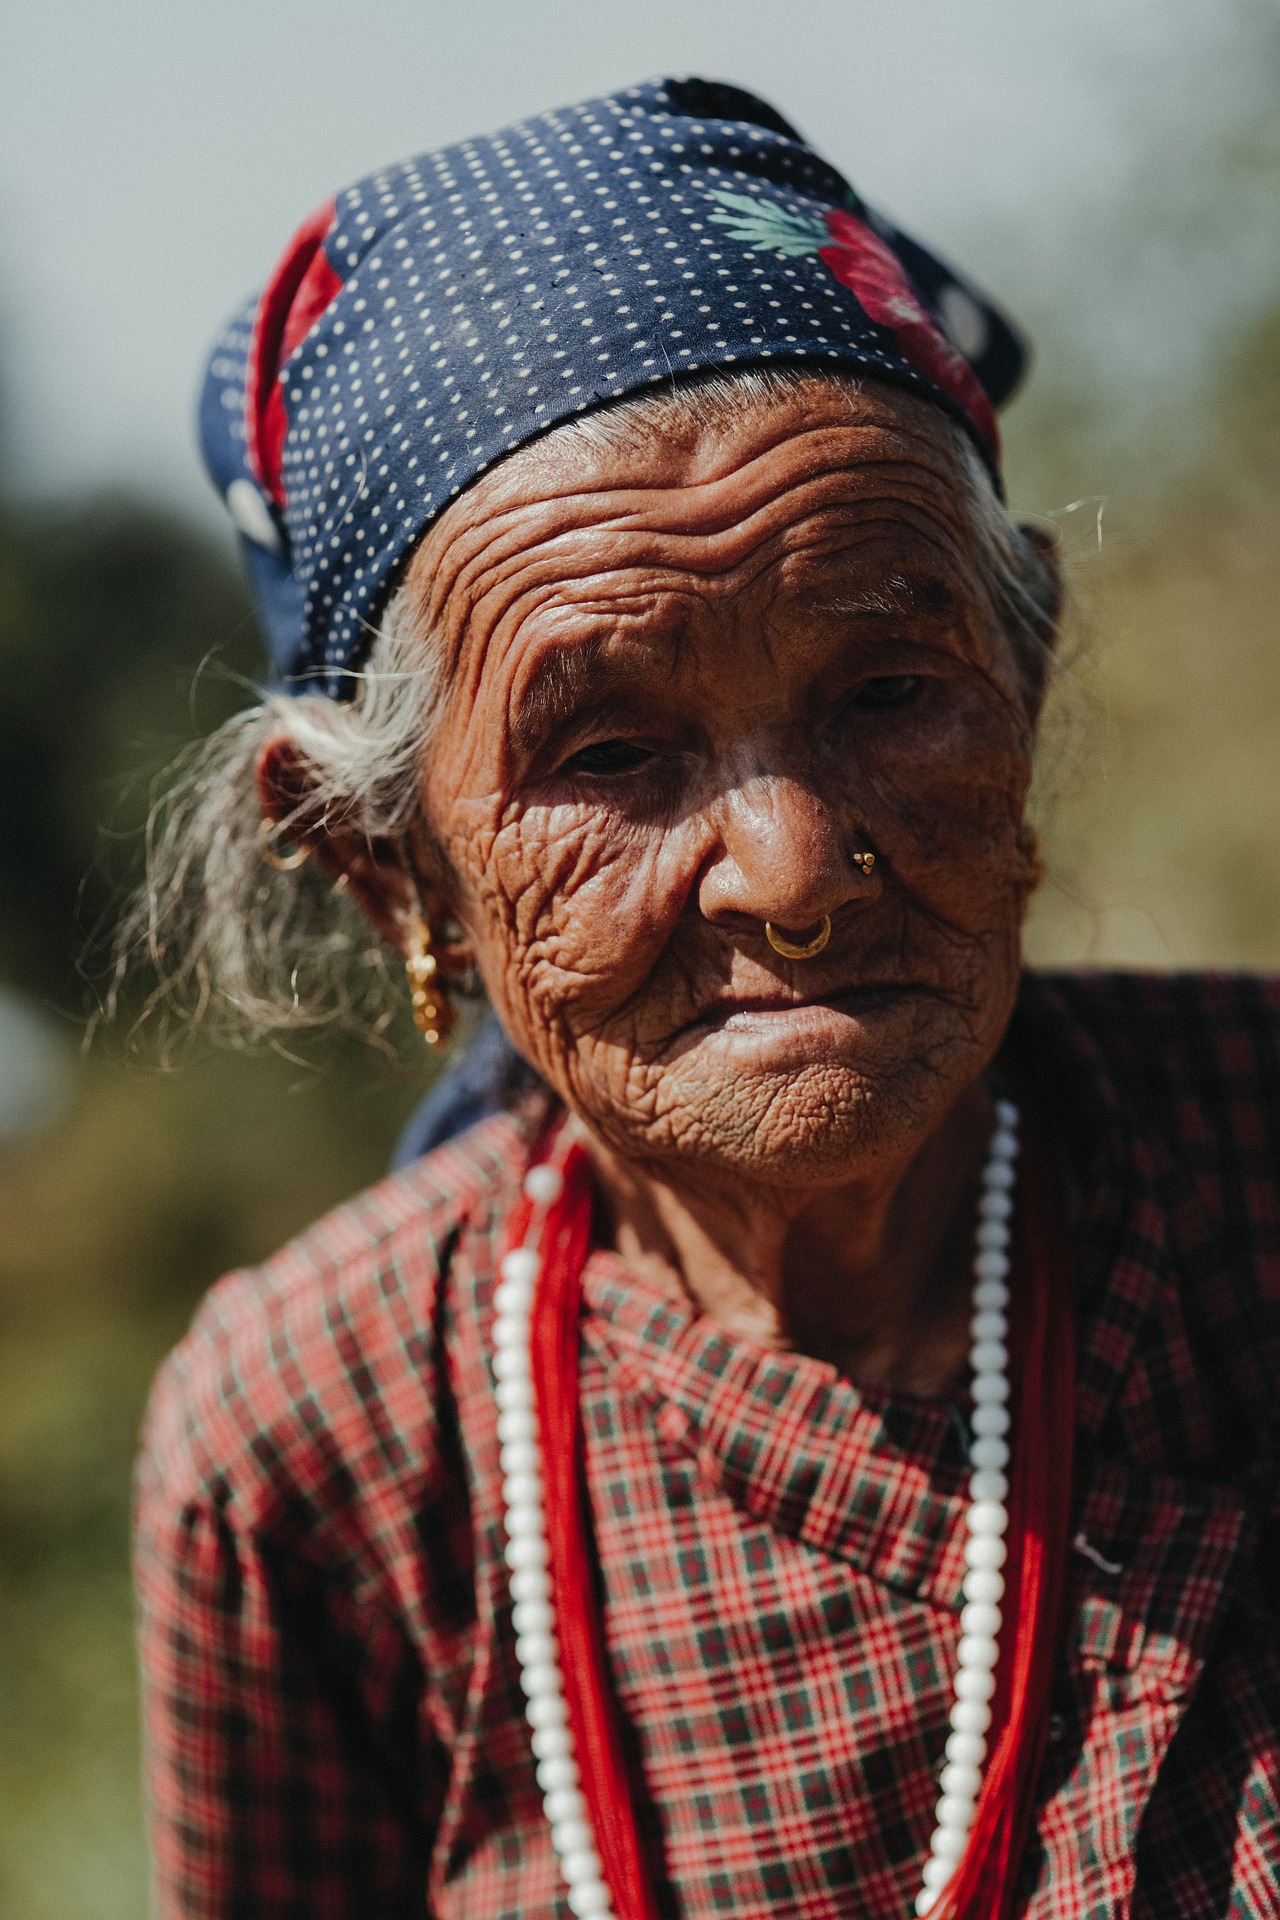 נפאל - אישה זקנה נפאלית (גנבת בעל כורחה...)